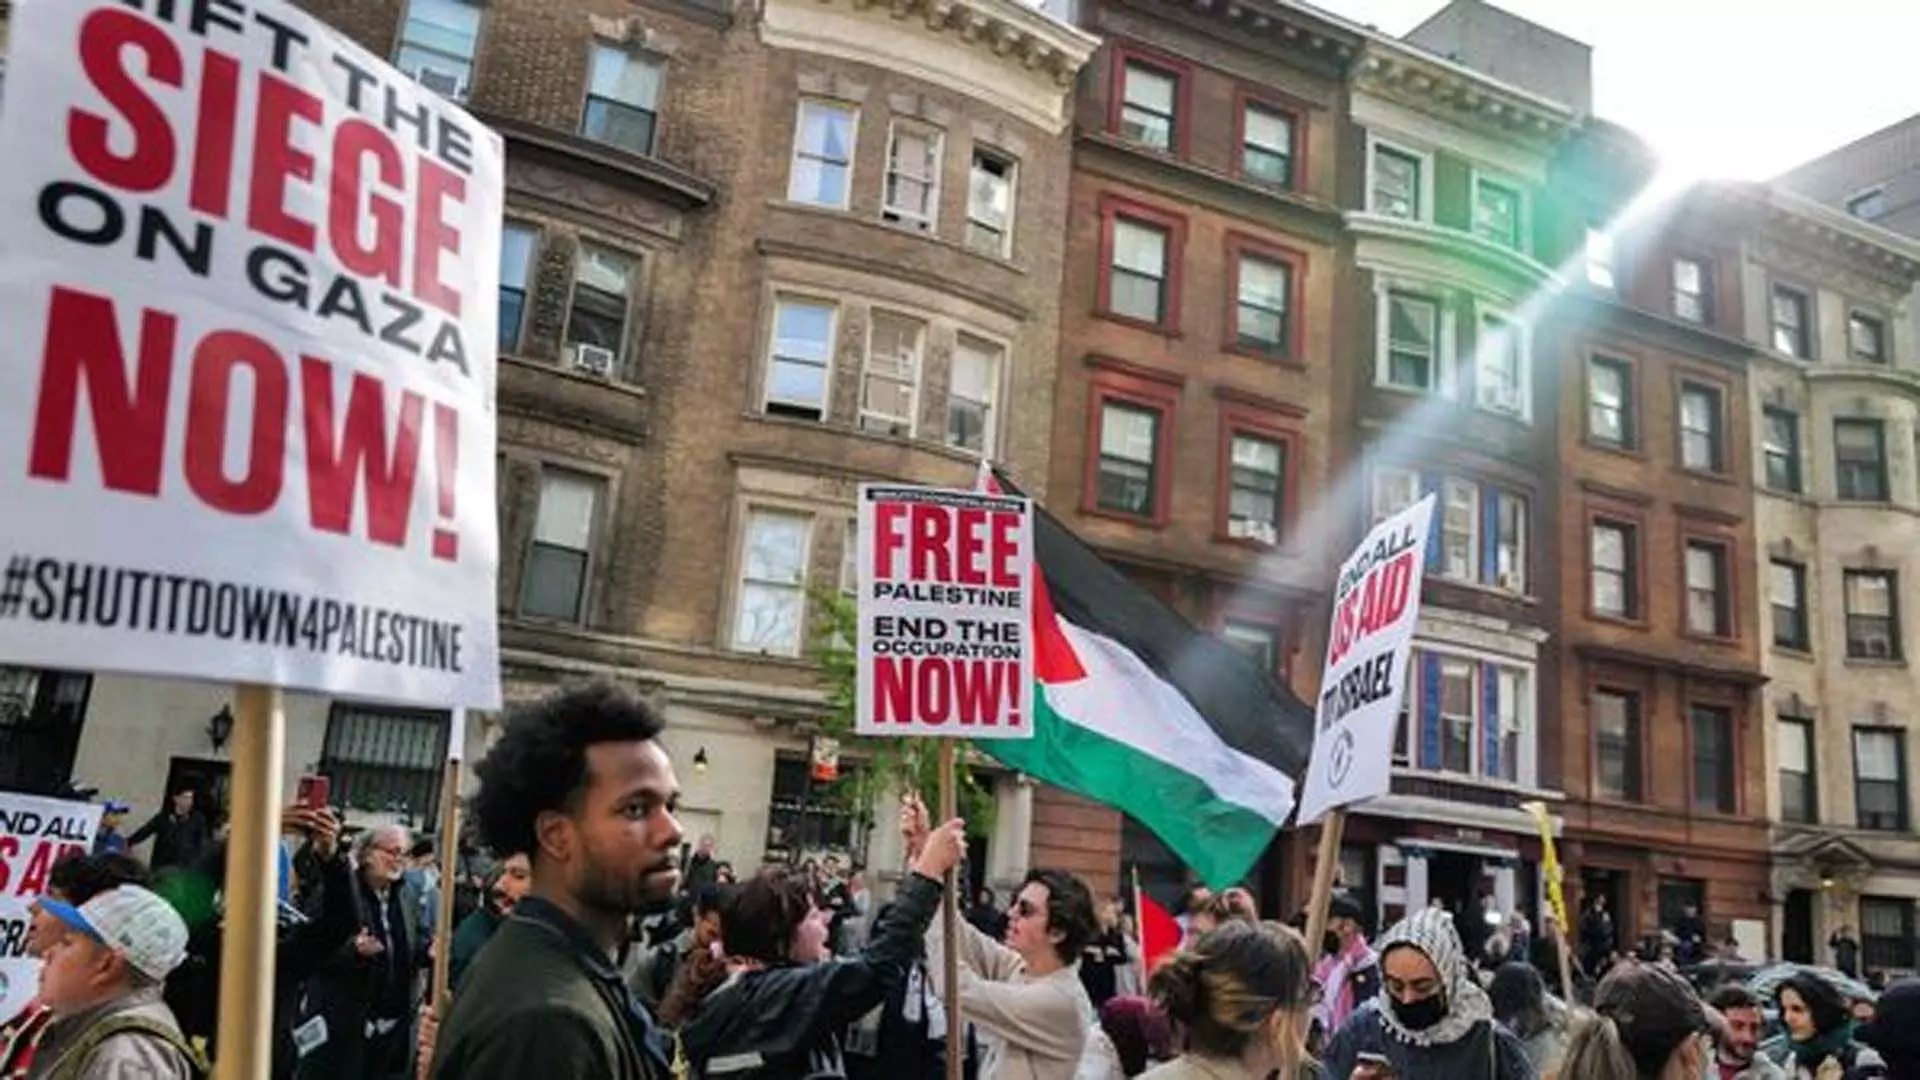 इज़राइल-हमास युद्ध के बीच फिलिस्तीनी समर्थक विरोध प्रदर्शनों से हिल गए अमेरिकी विश्वविद्यालय